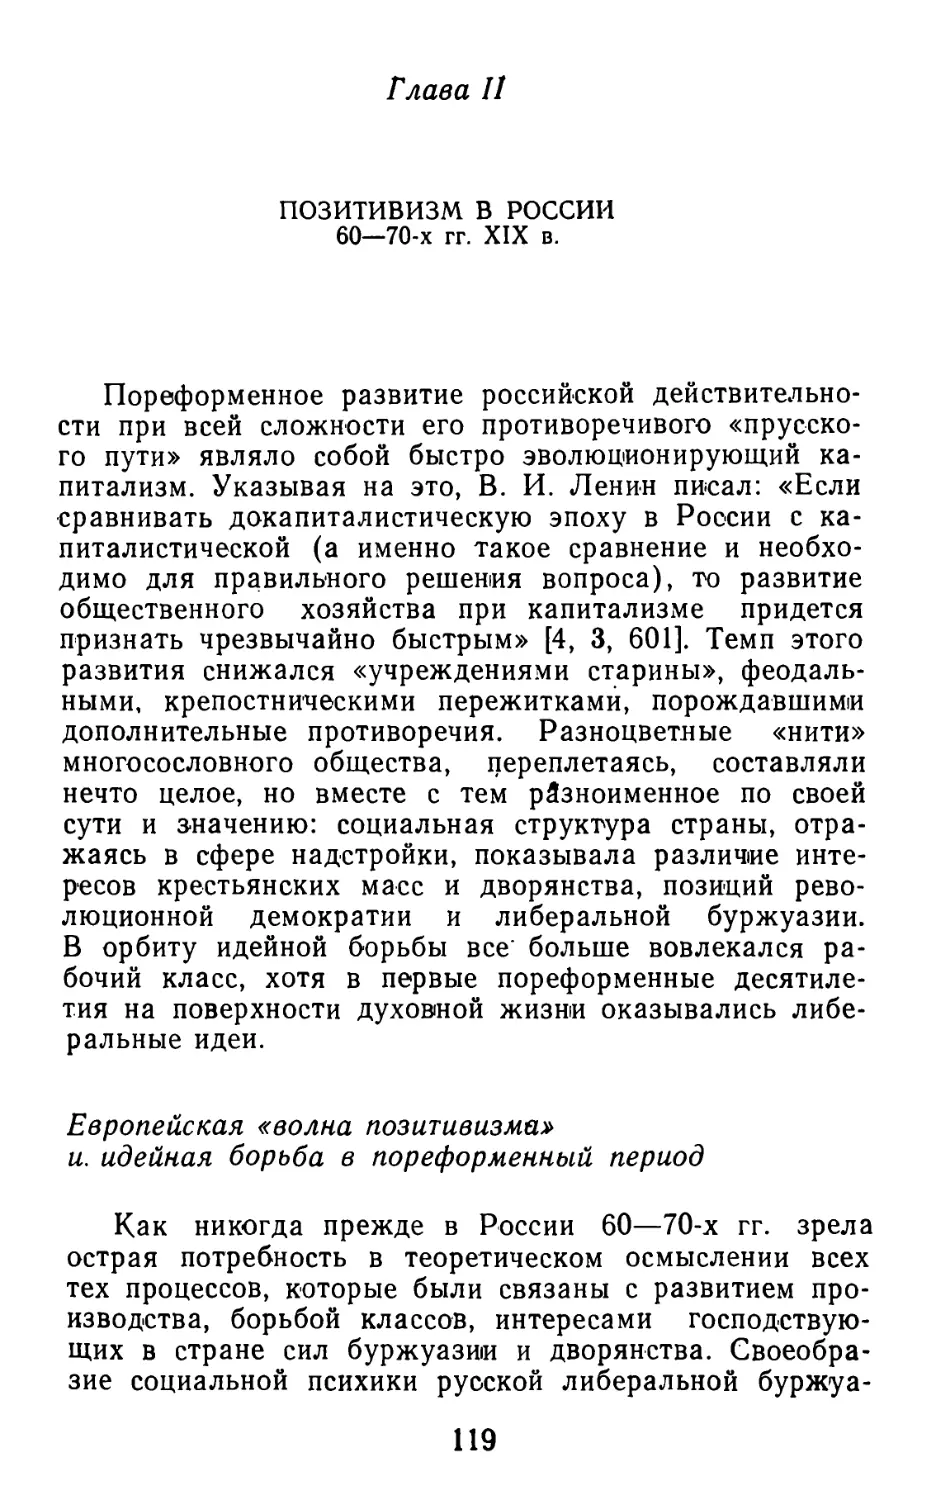 Глава II. ПОЗИТИВИЗМ В РОССИИ 60-70-х гг. XIX в.
Европейская «волна позитивизма» и идейная борьба в пореформенный период